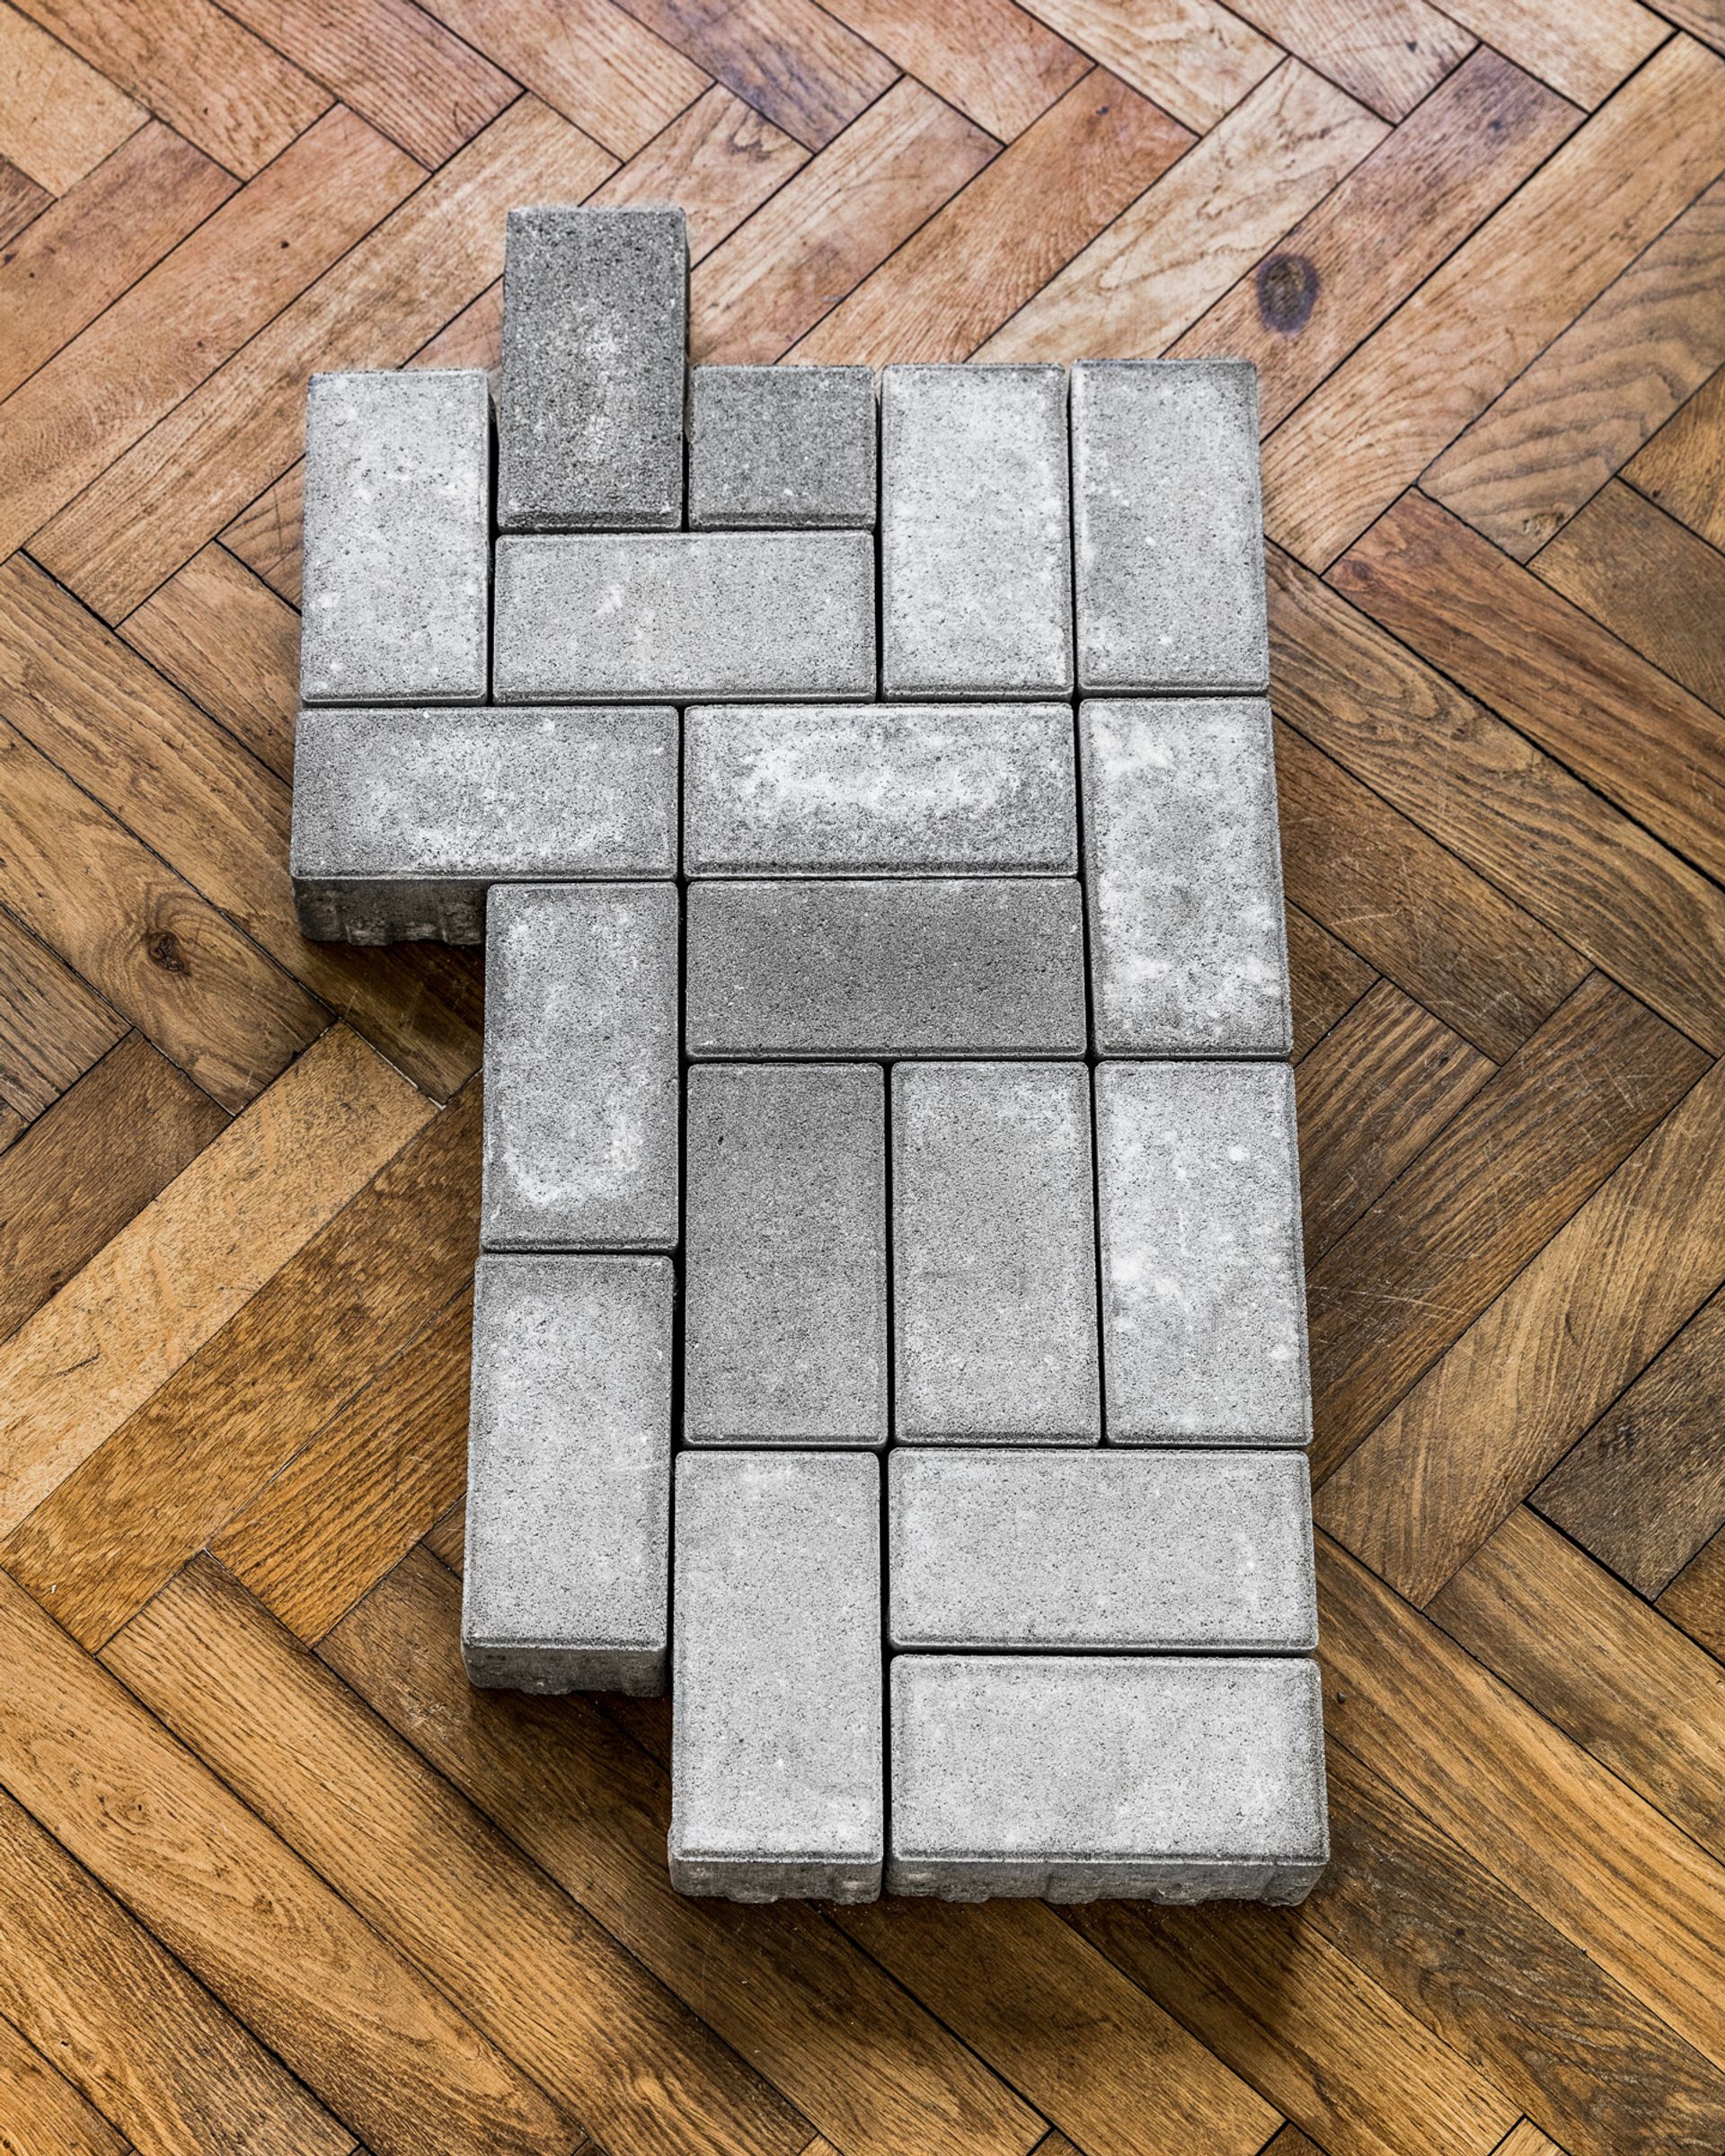 Thomas Geiger, A stage for unscrupulous behaviour, 2017, concrete paving stones, adhesive letters, 90,5 × 49,5 × 8 cm